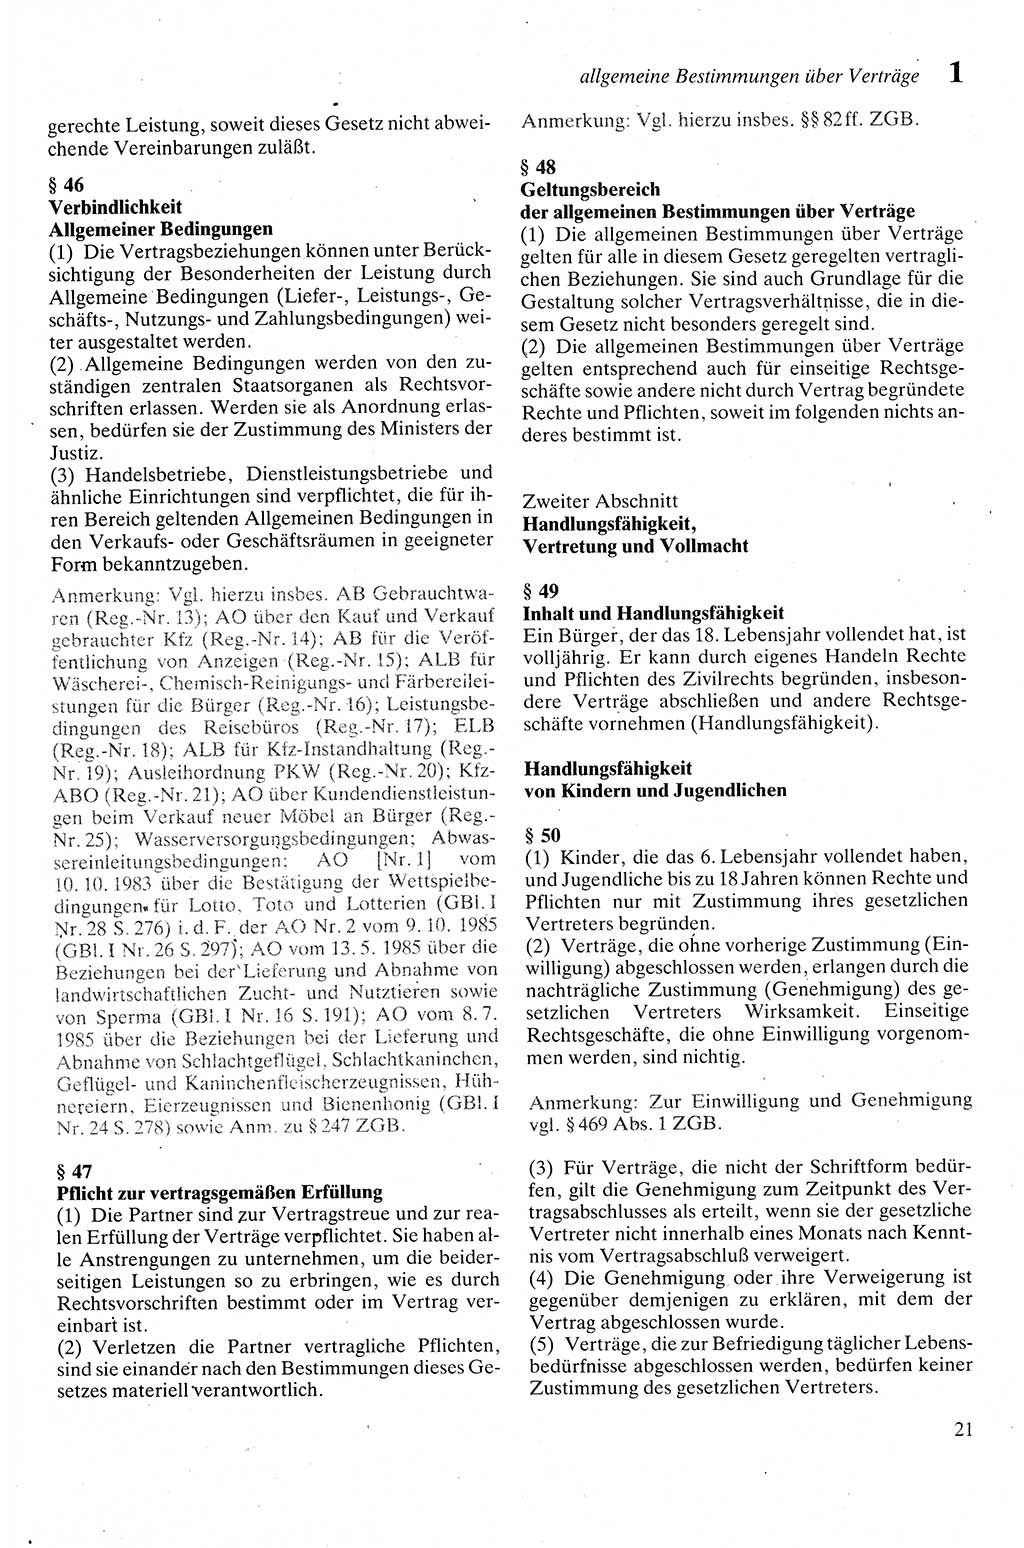 Zivilgesetzbuch (ZVG) sowie angrenzende Gesetze und Bestimmungen [Deutsche Demokratische Republik (DDR)] 1975, Seite 21 (ZGB Ges. Best. DDR 1975, S. 21)